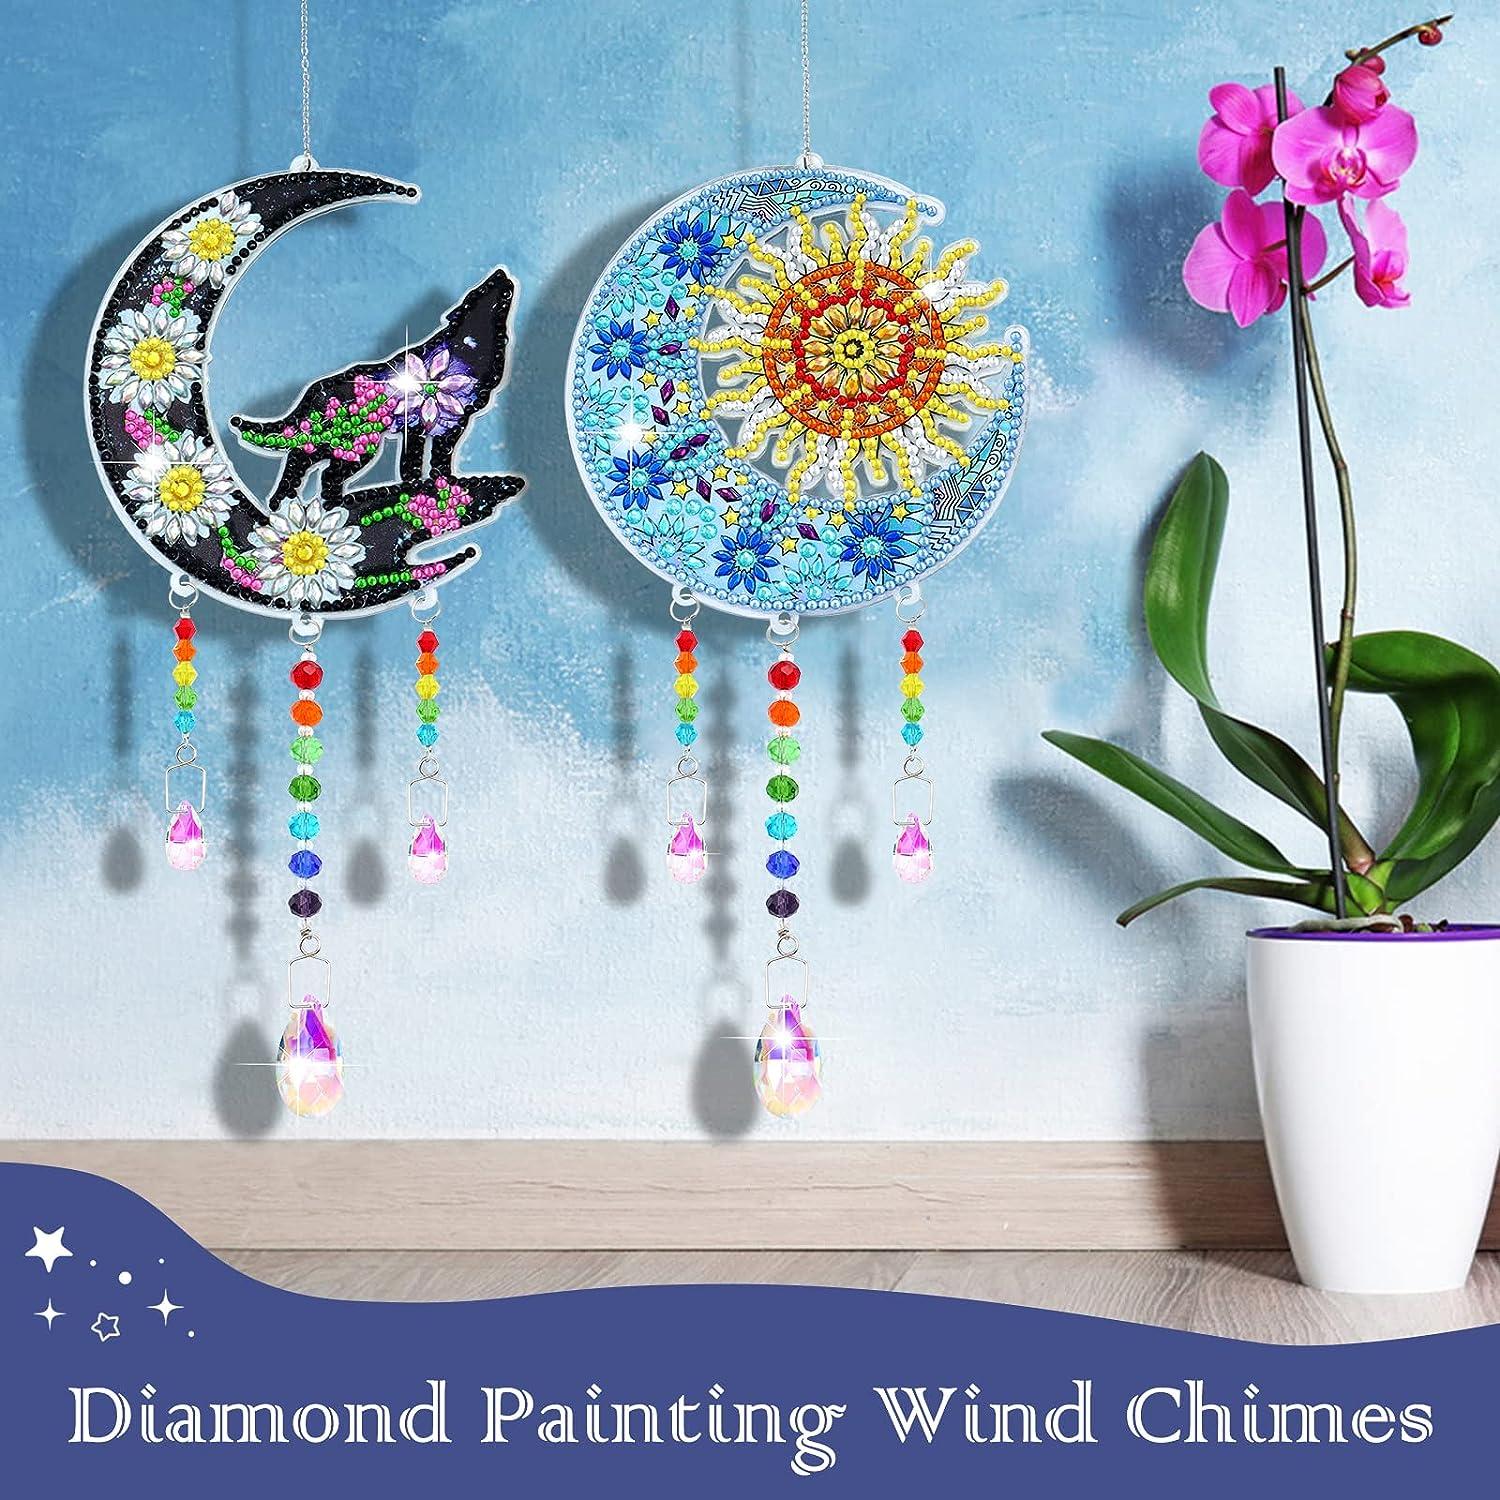 DIY Diamond Painting Wind Chime 5D Diamond Painting Diamond